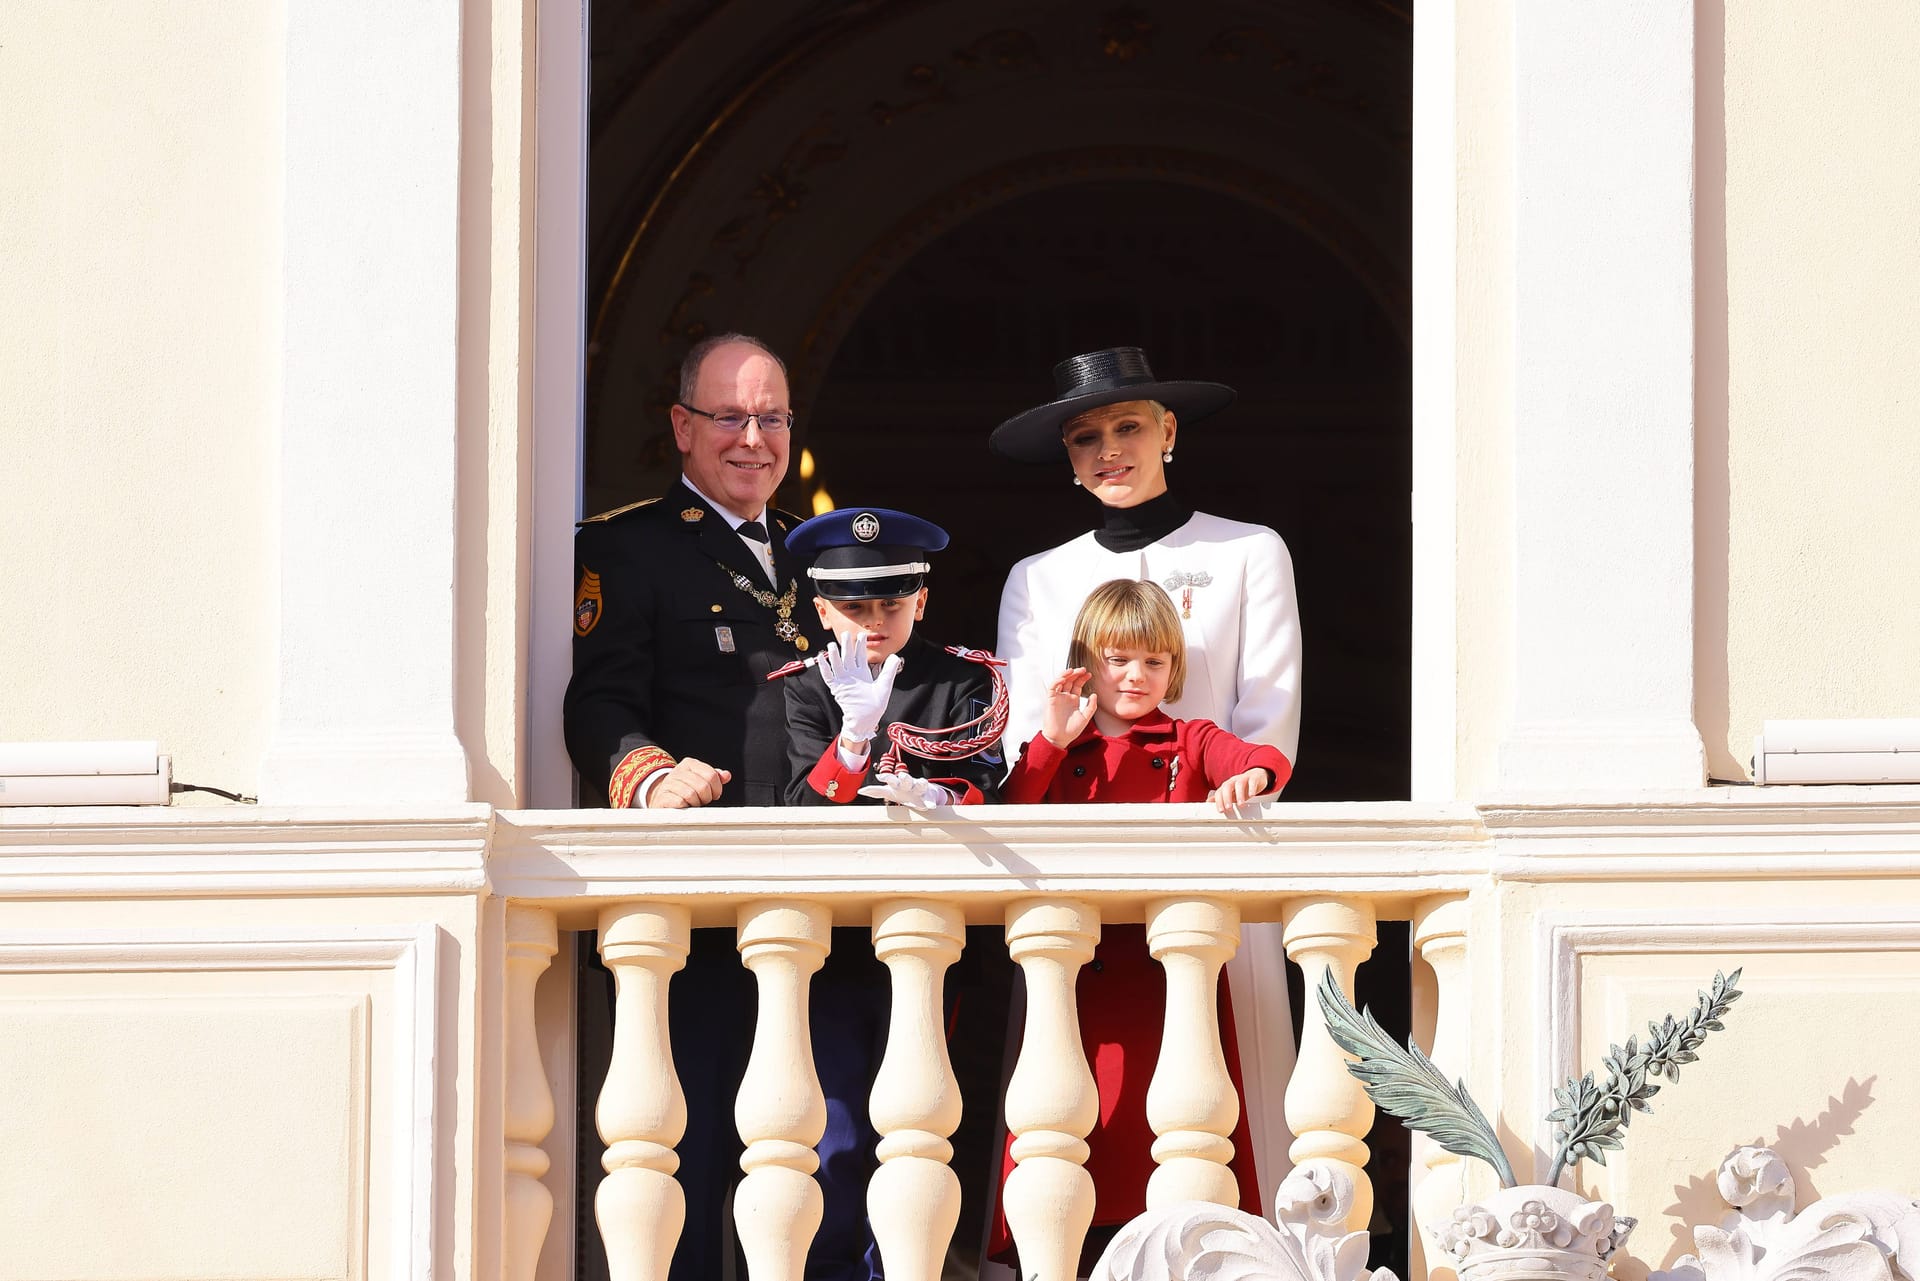 Fürst Albert II. und Fürstin Charlène mit ihren Kindern Gabriella und Jacques.